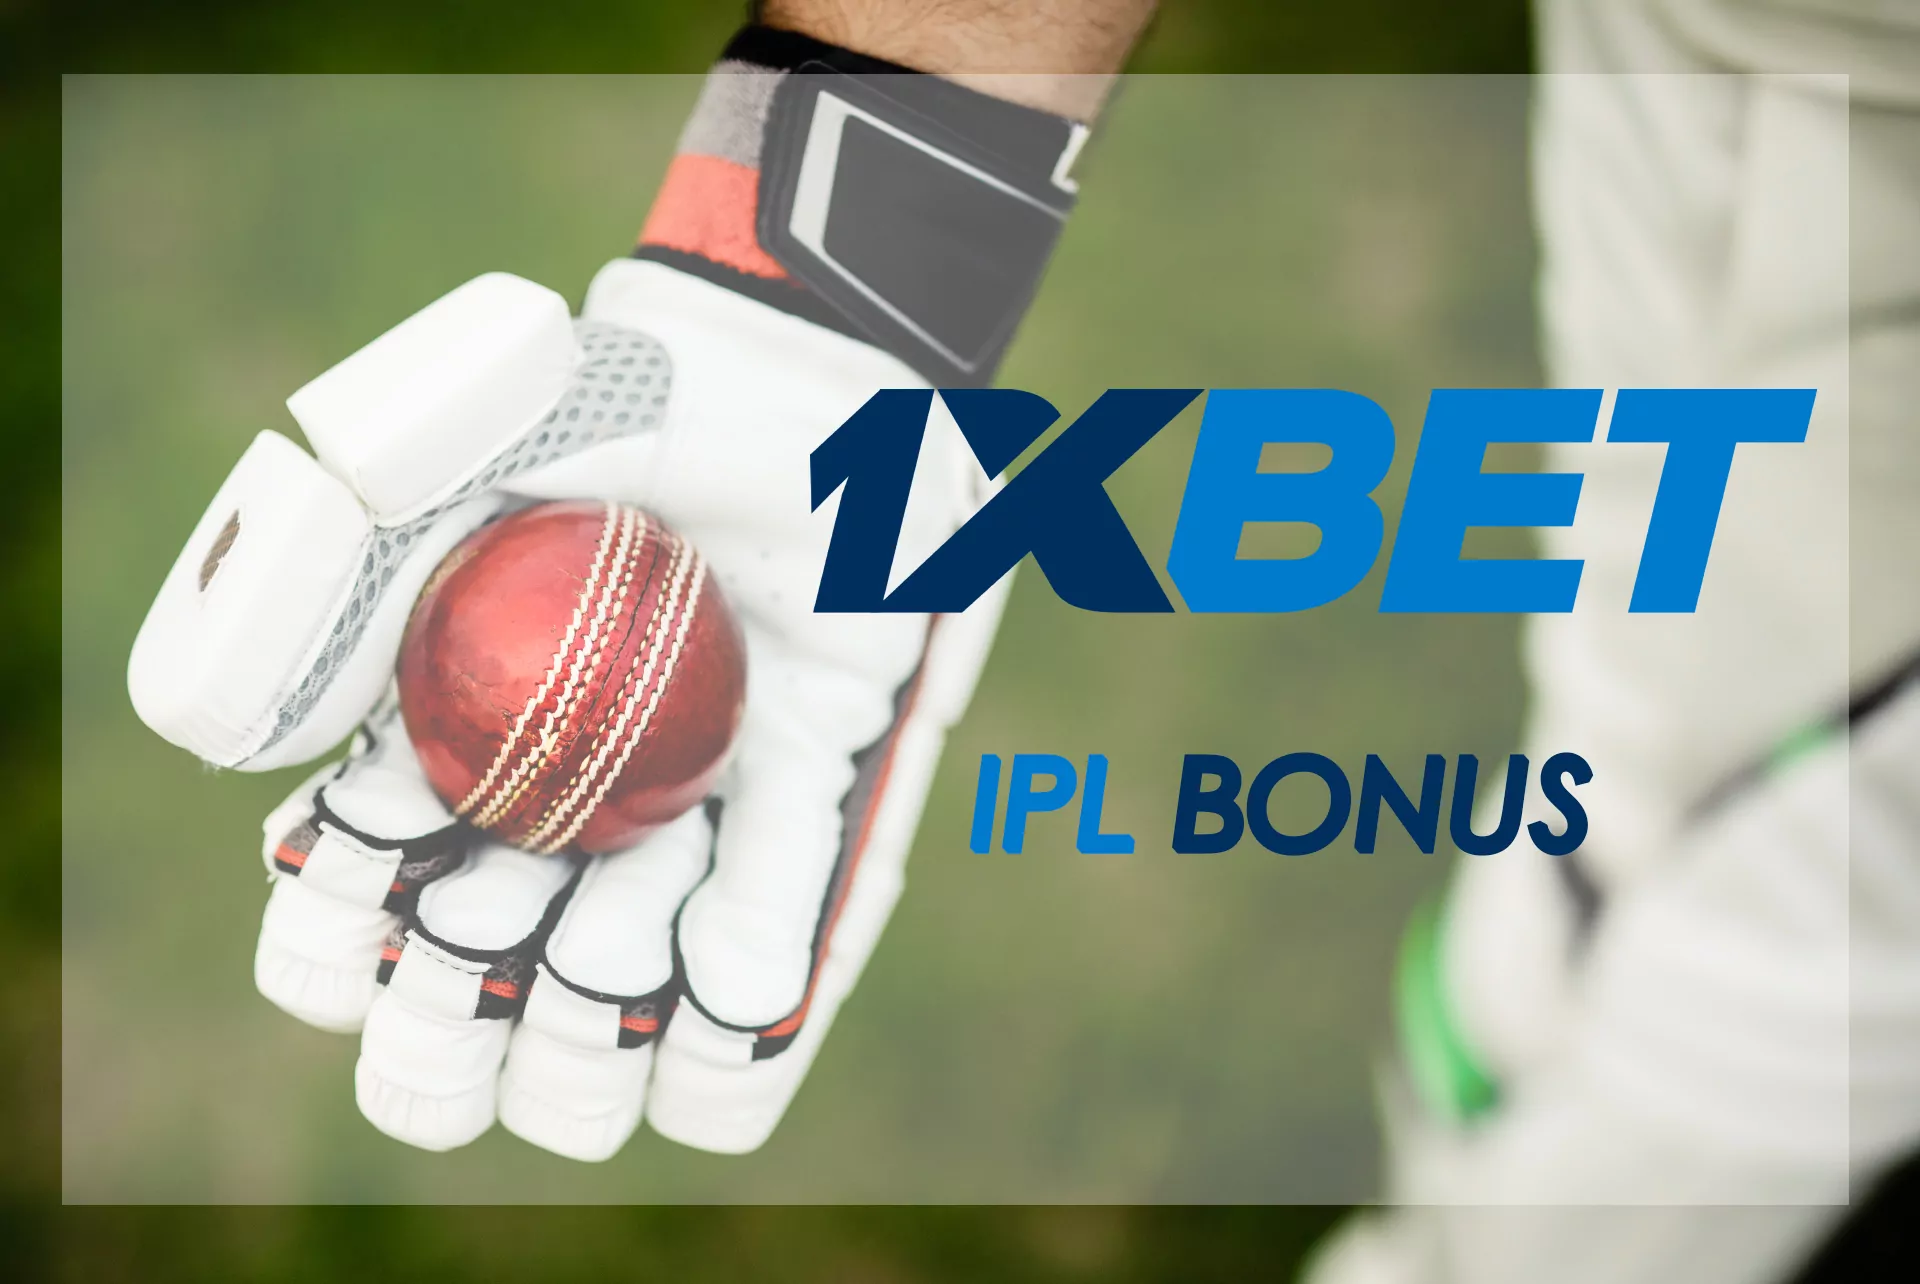 आईपीएल के दौरान, 1xBet क्रिकेट सट्टेबाजी के लिए विशेष बोनस प्रदान करता है।